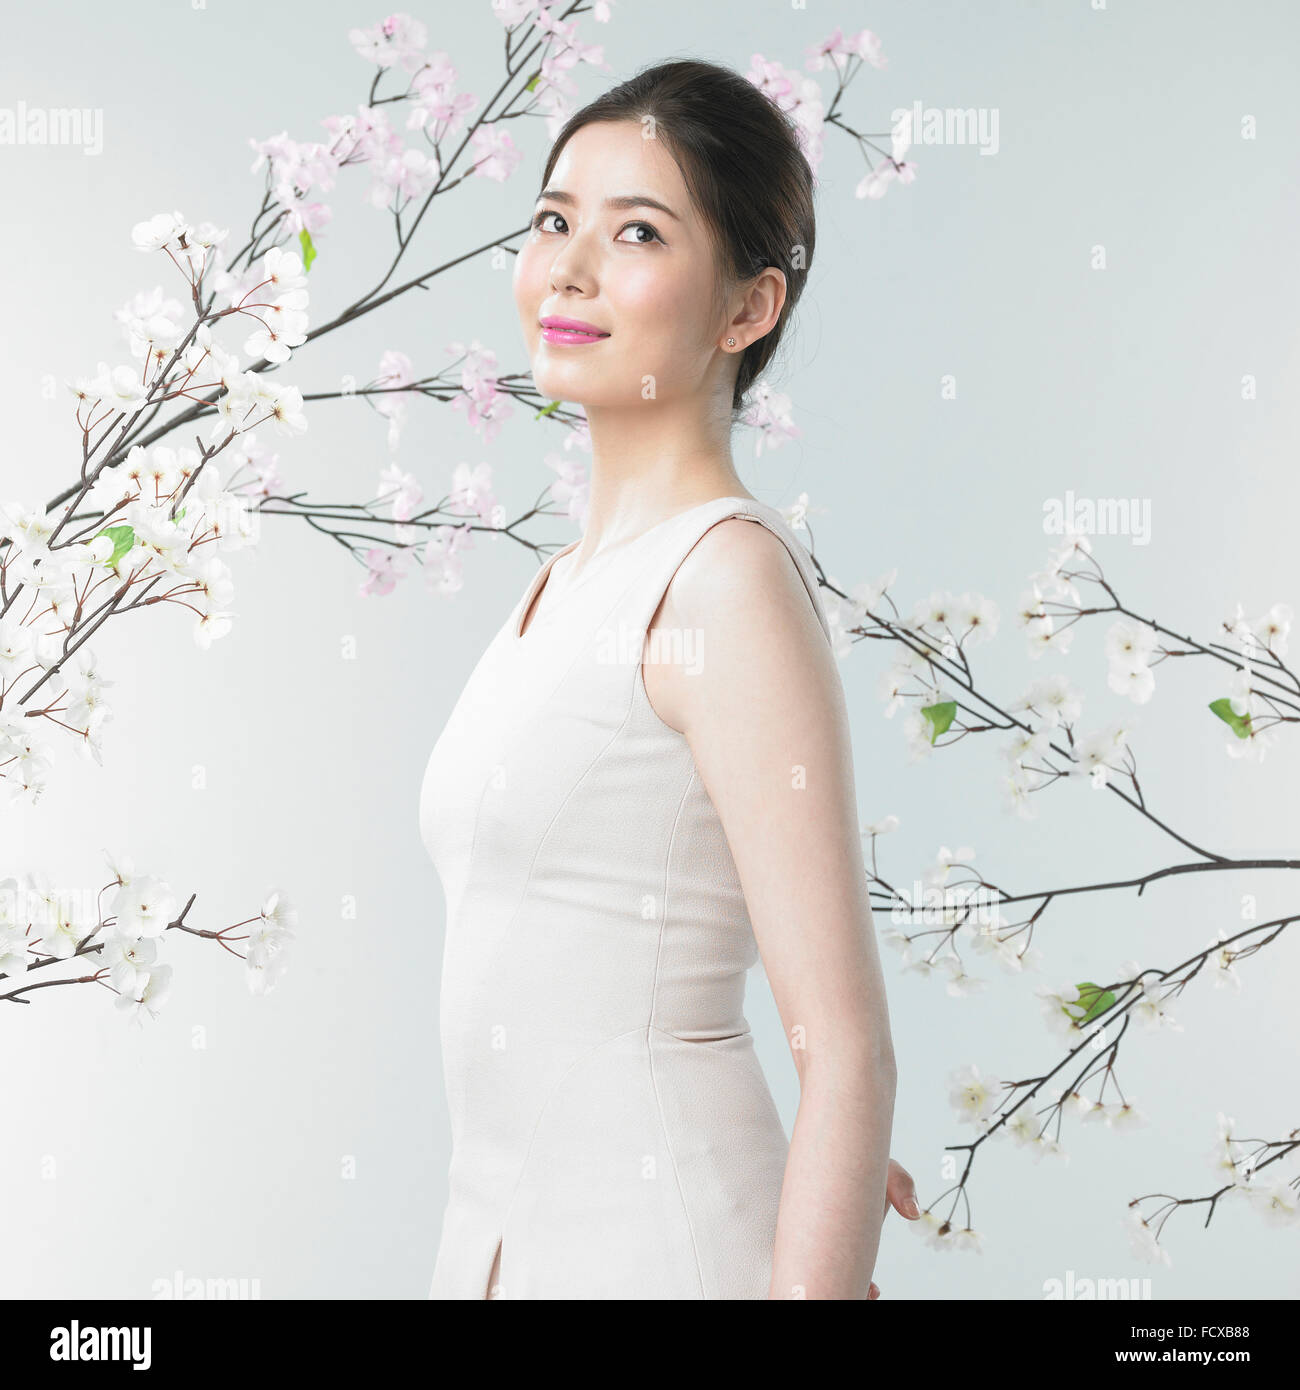 Woman smiling and looking up avec l'arrière-plan de branches des cerisiers en fleur Banque D'Images